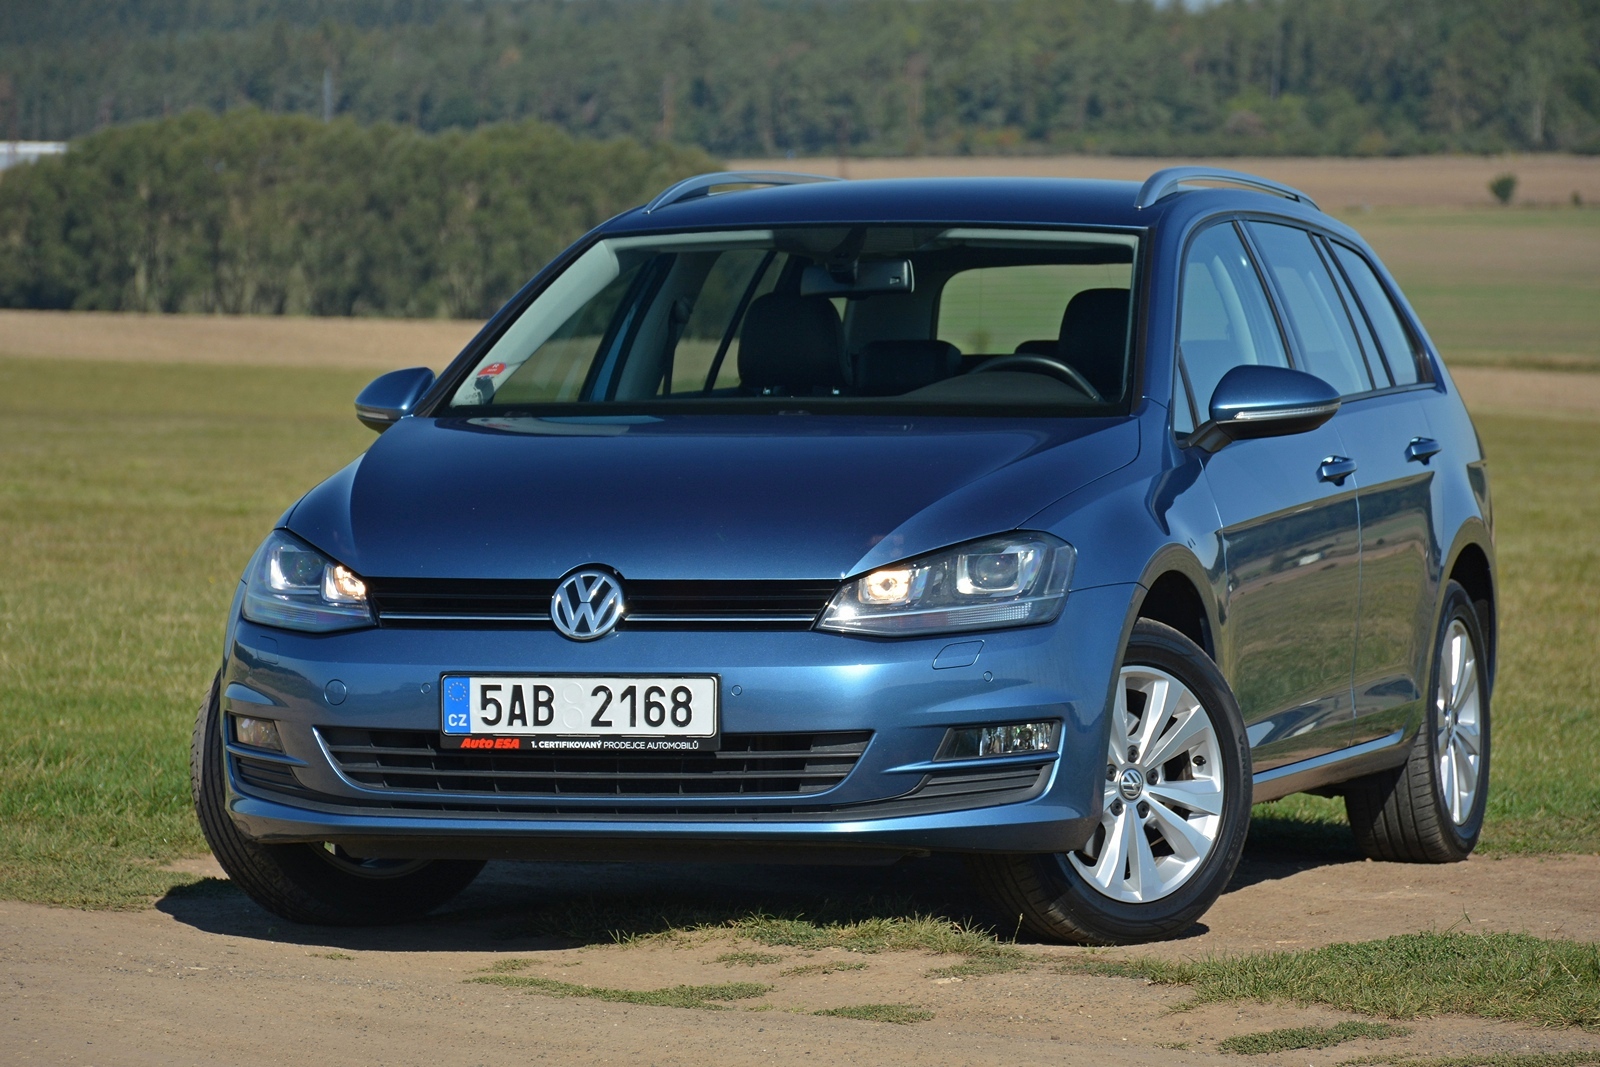 Test Ojetiny Volkswagen Golf 1.4 Tsi: Kupujte, Dokud Jsou! - Garáž.cz